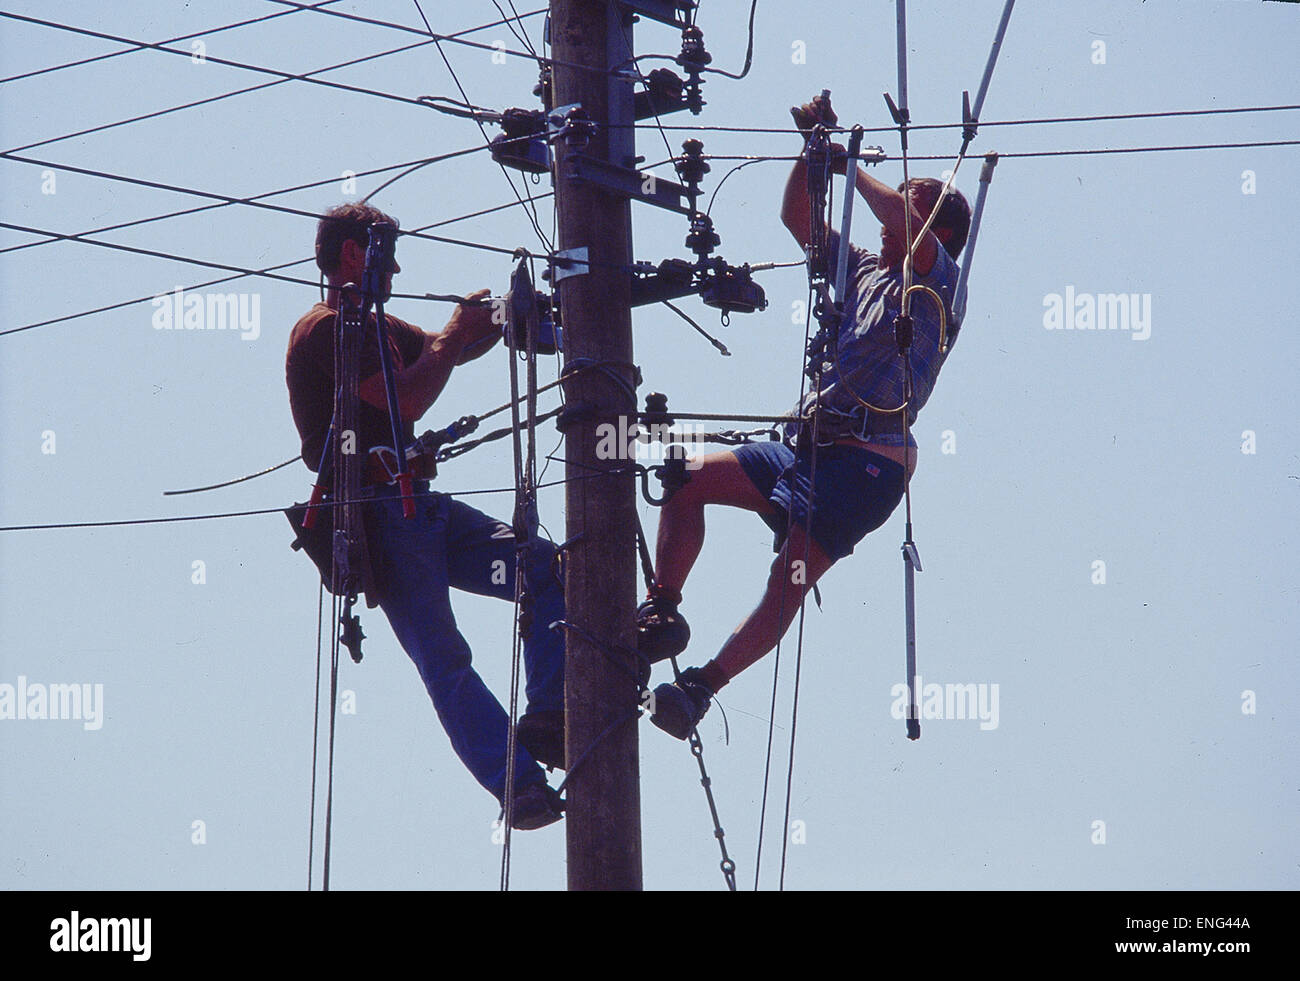 Zwei Arbeiter am Telegrafenmast Stock Photo